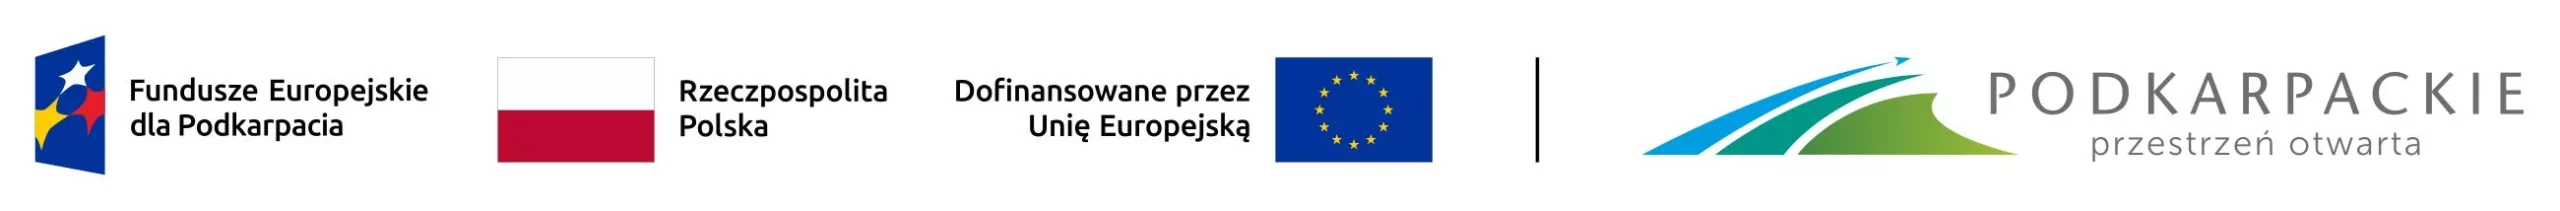 Zestawienie znakóww: Fundusze Europejskie, Barwy Rzeczypospolitej Polskiej, Unia Europejska